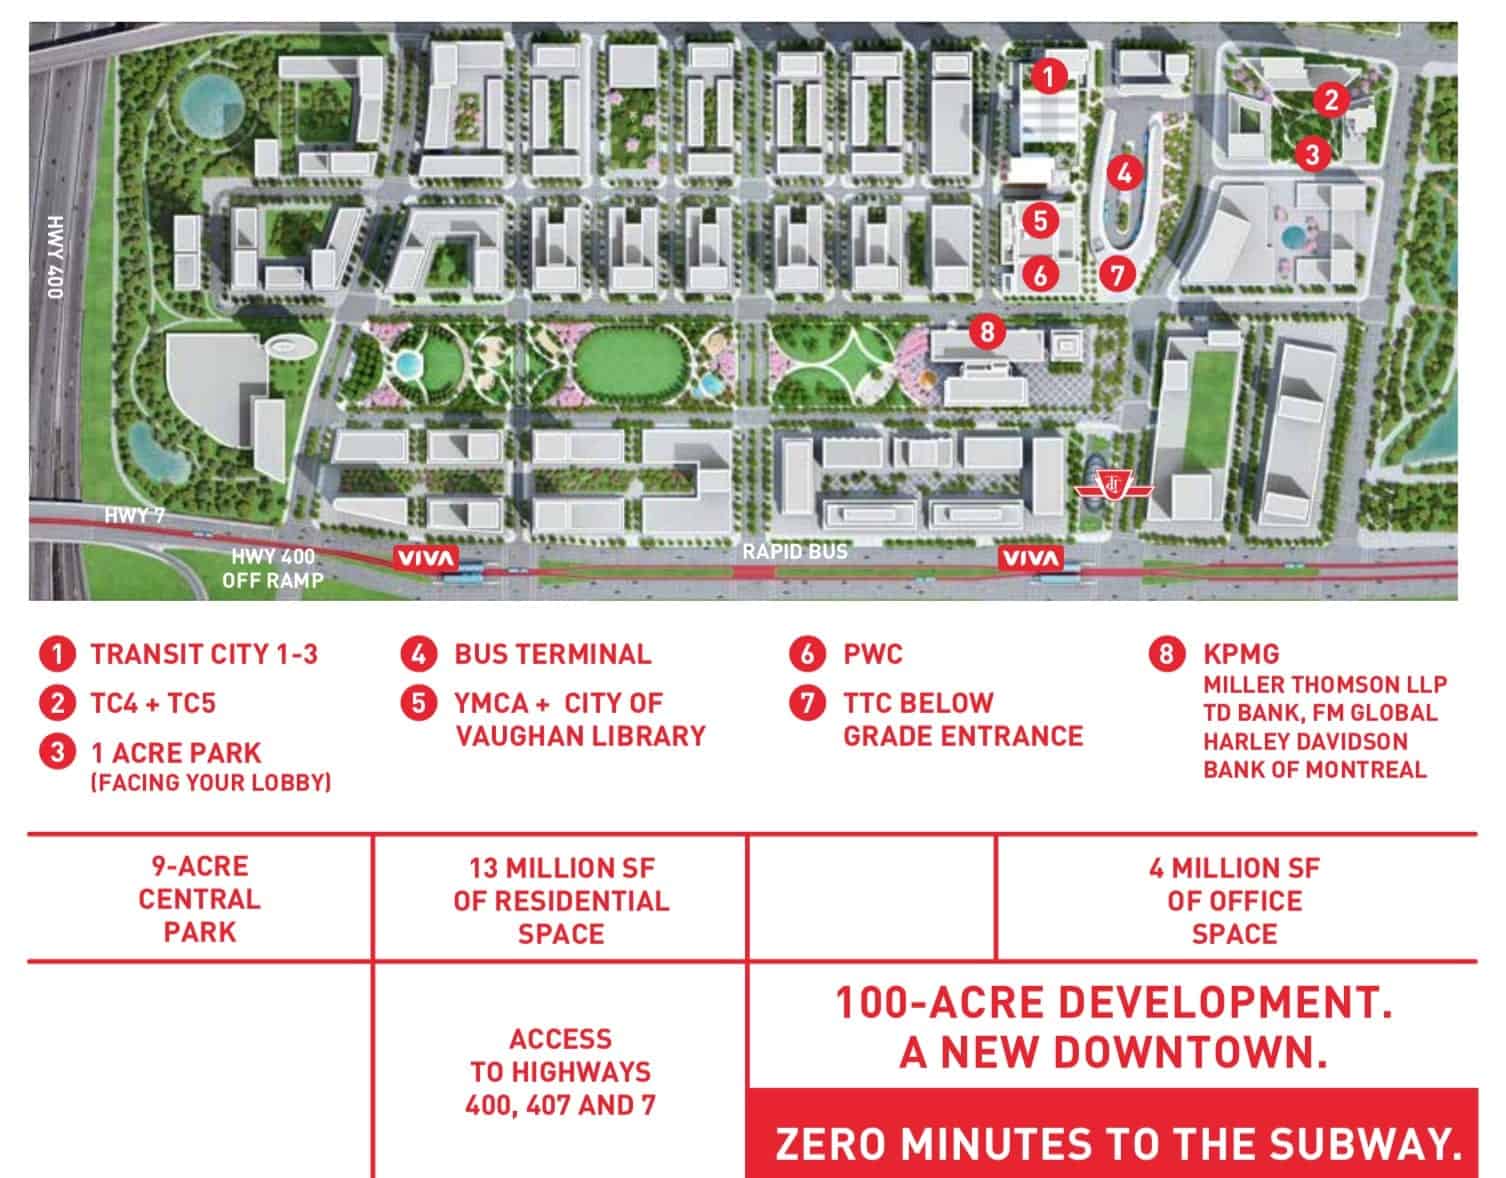 Transity City 4 Condos Site Plan Vaughan True Condos